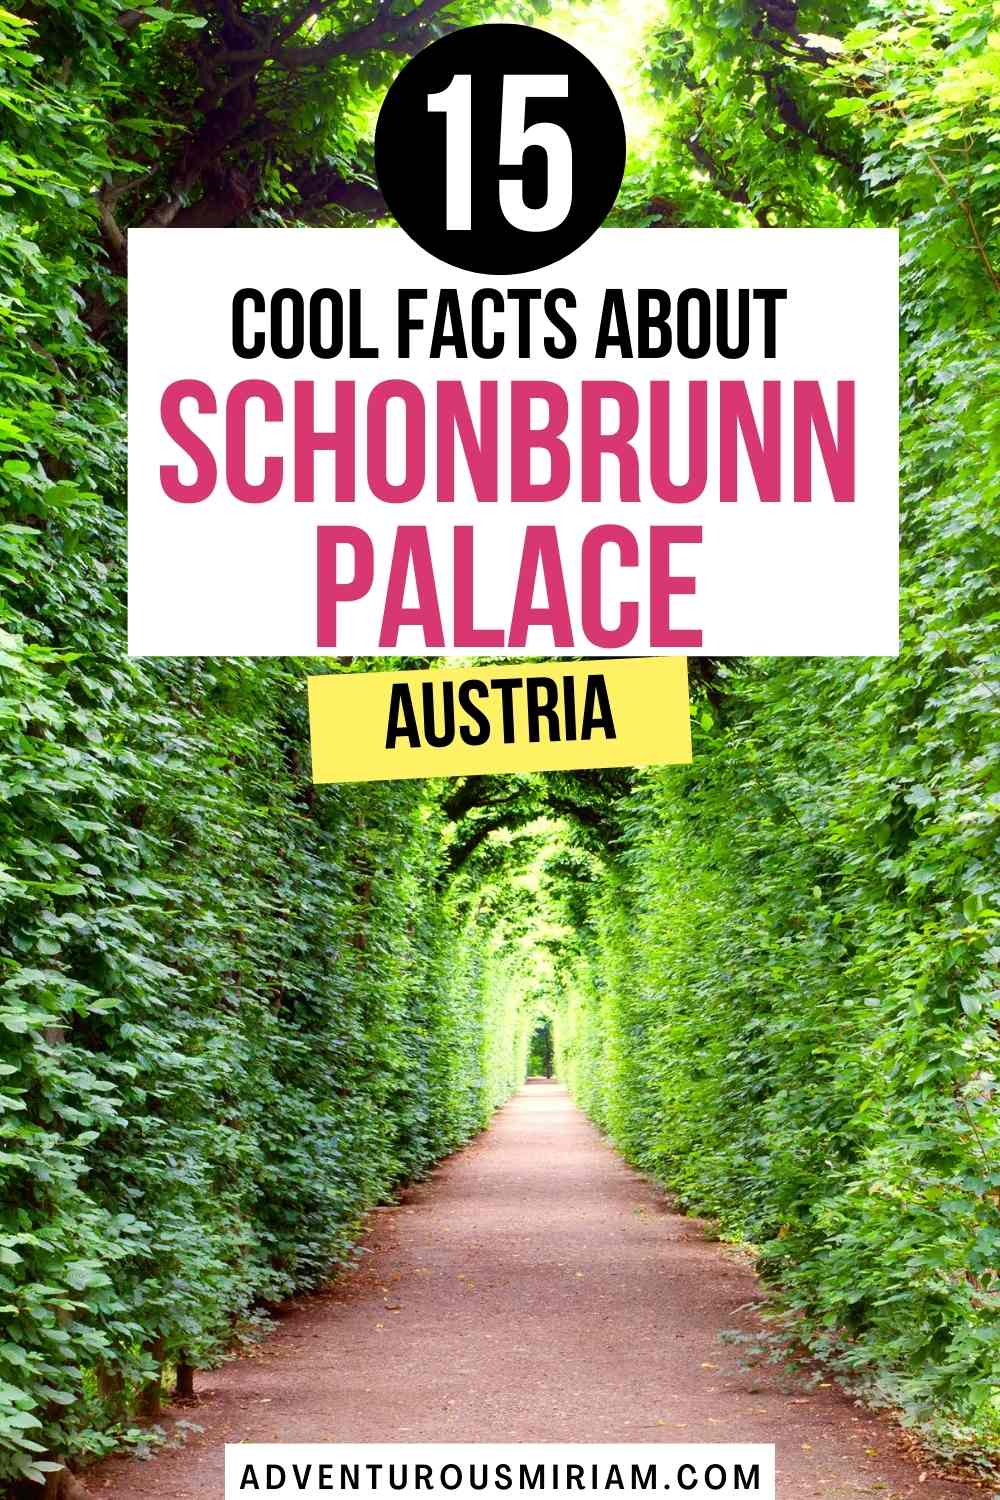 Schonbrunn palace gardens. Schonbrunn palace photography. Schonbrunn palace vienna. Schonbrunn gardens. Schönbrunn wien. Royal aesthetic castle outside. Europe. Schonbrunn palace facts.